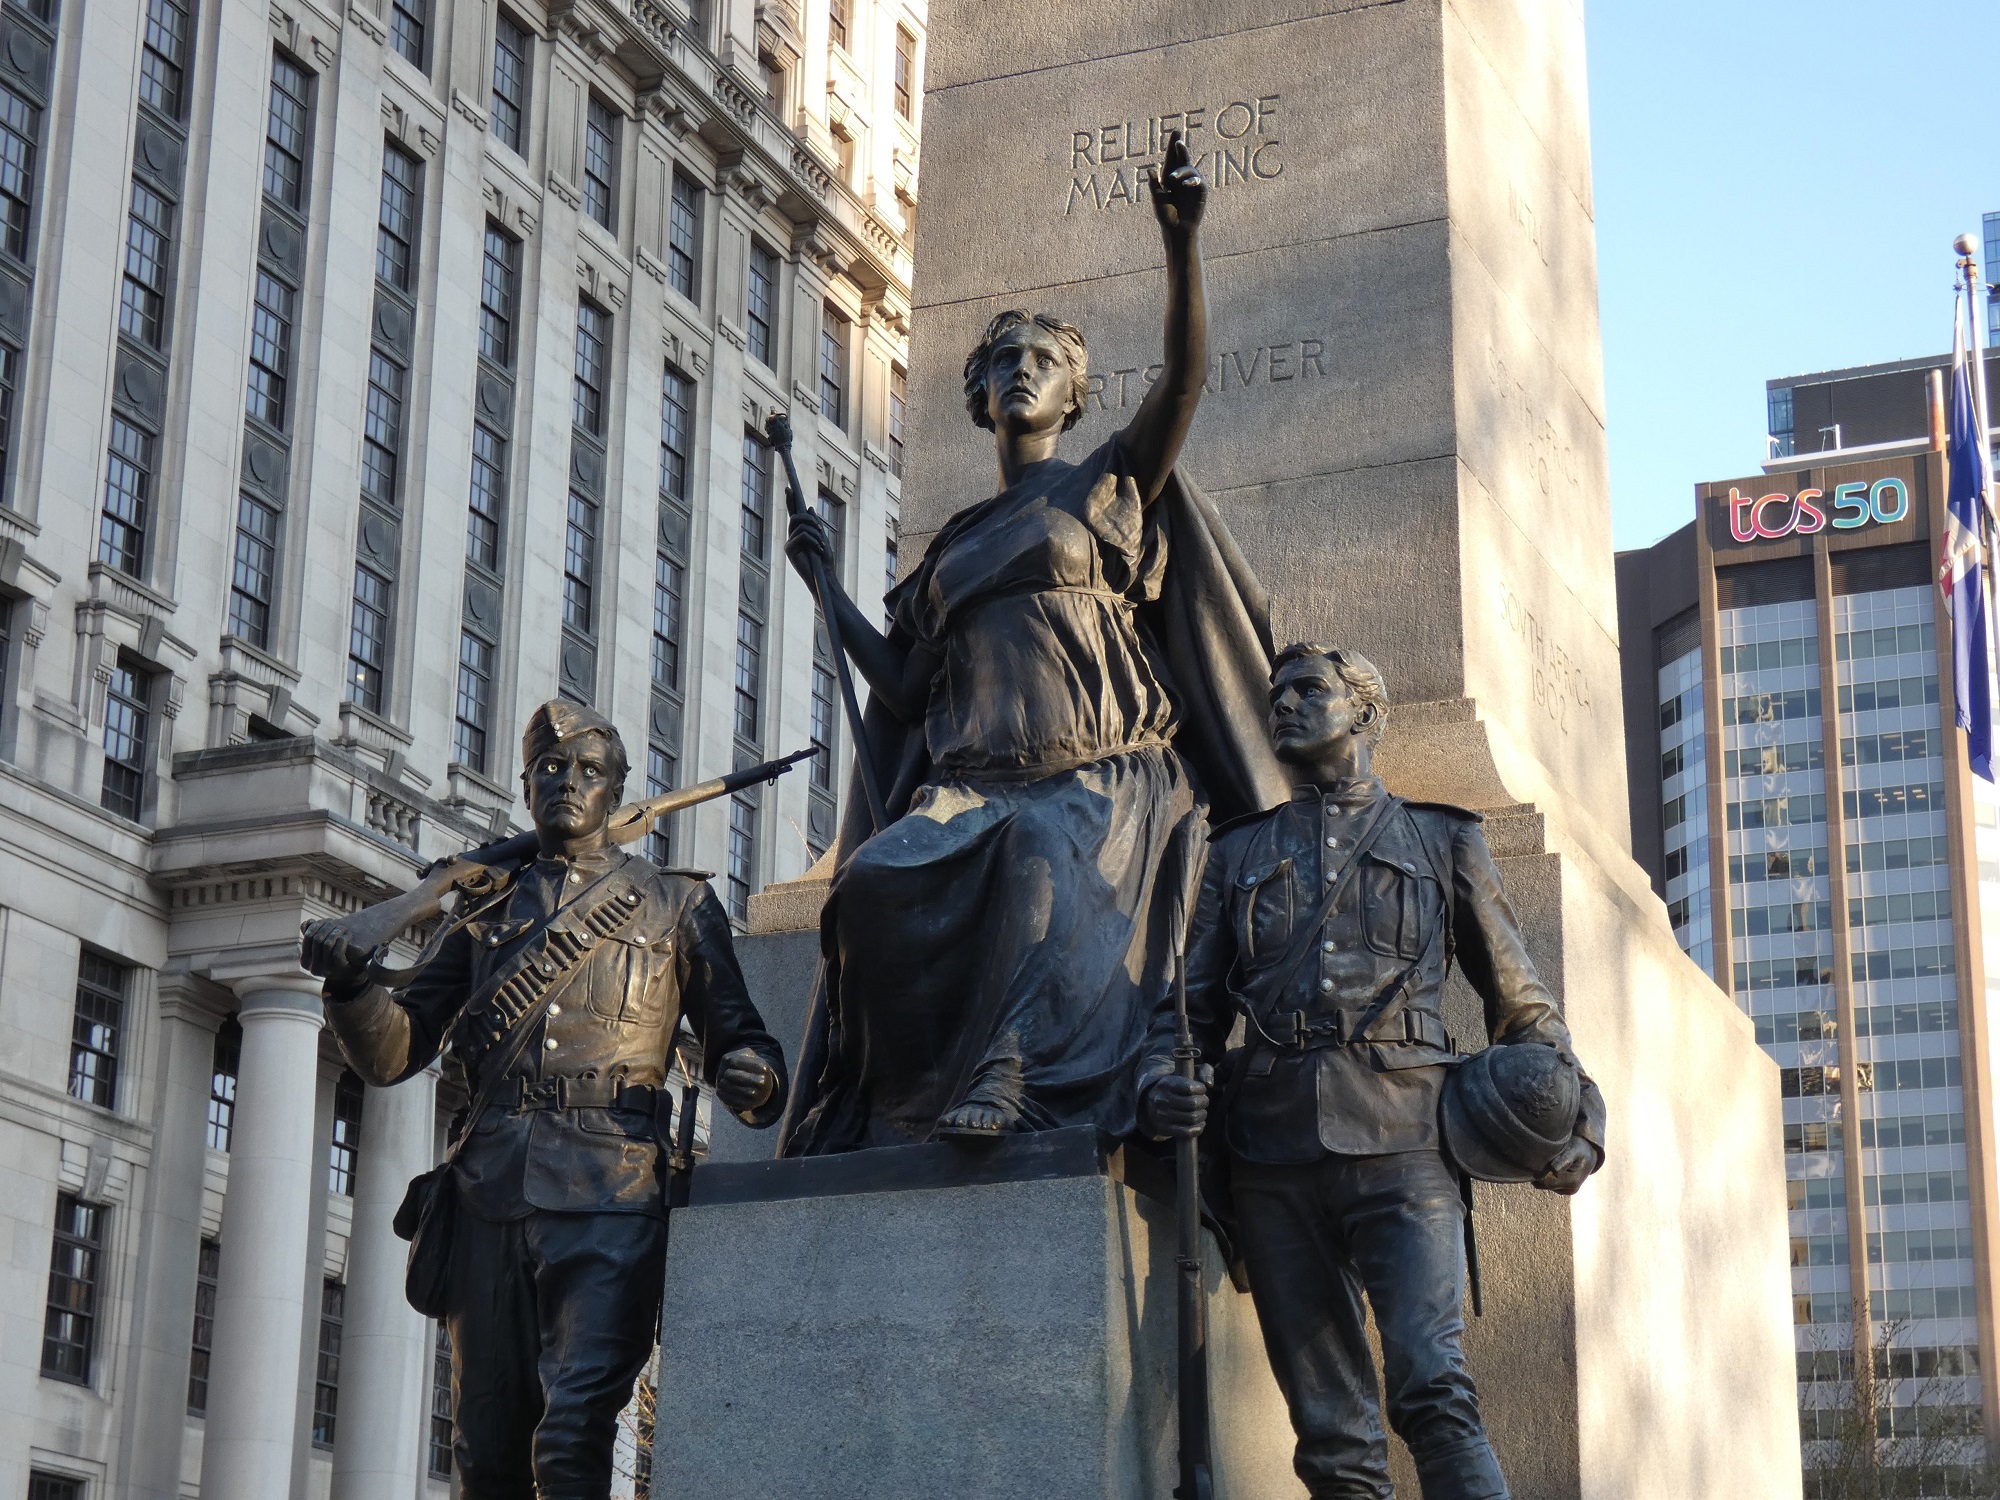 Canada, infantryman, and cavalryman statues